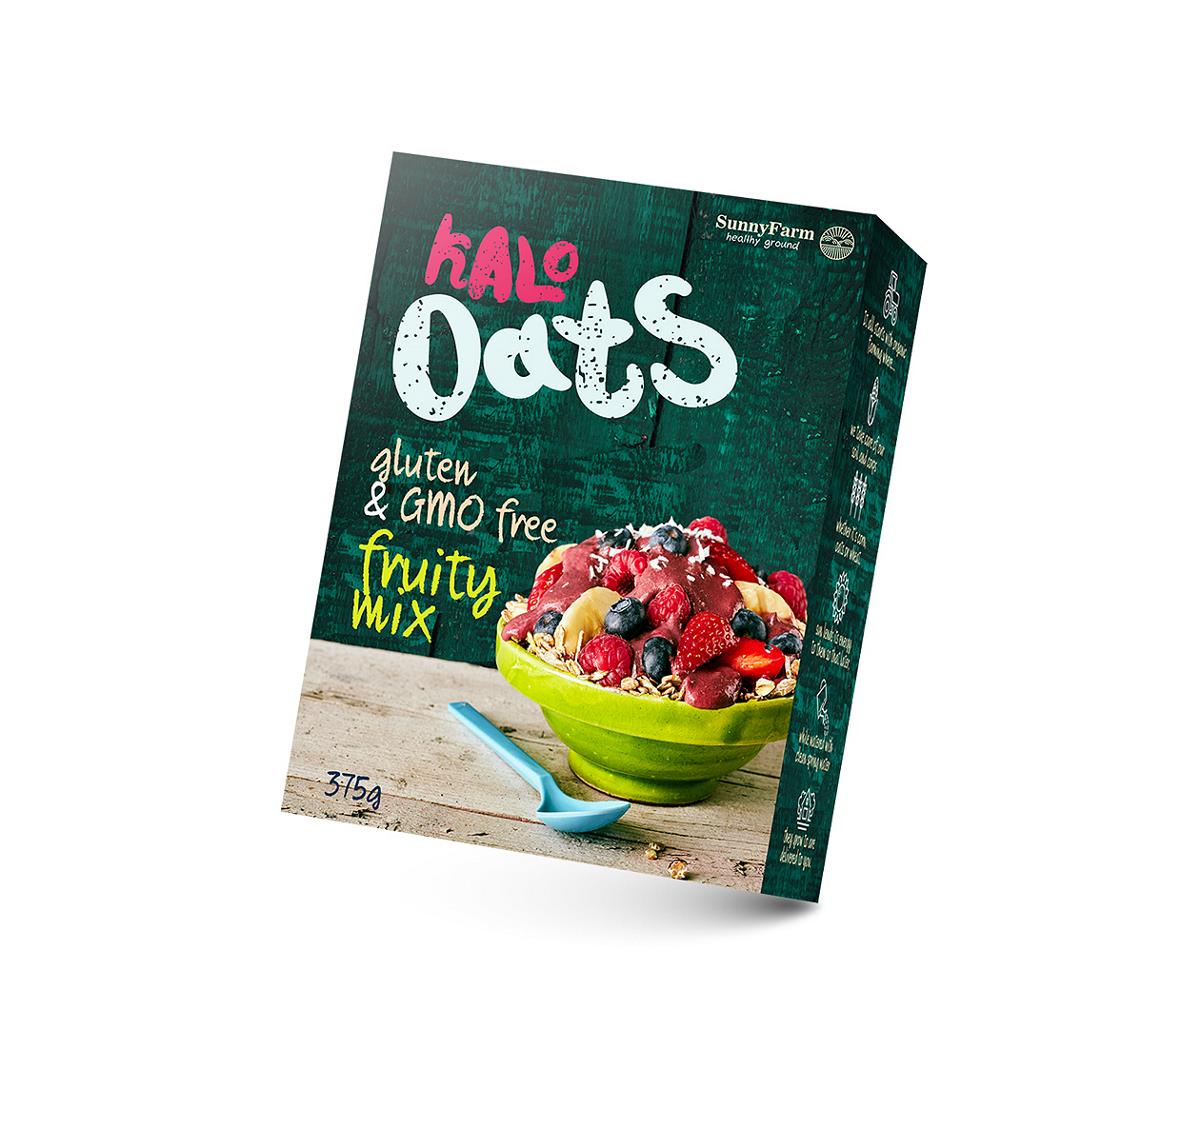 Kalo Cereals & Oats and new packaging包装设计| 摩尼视觉分享